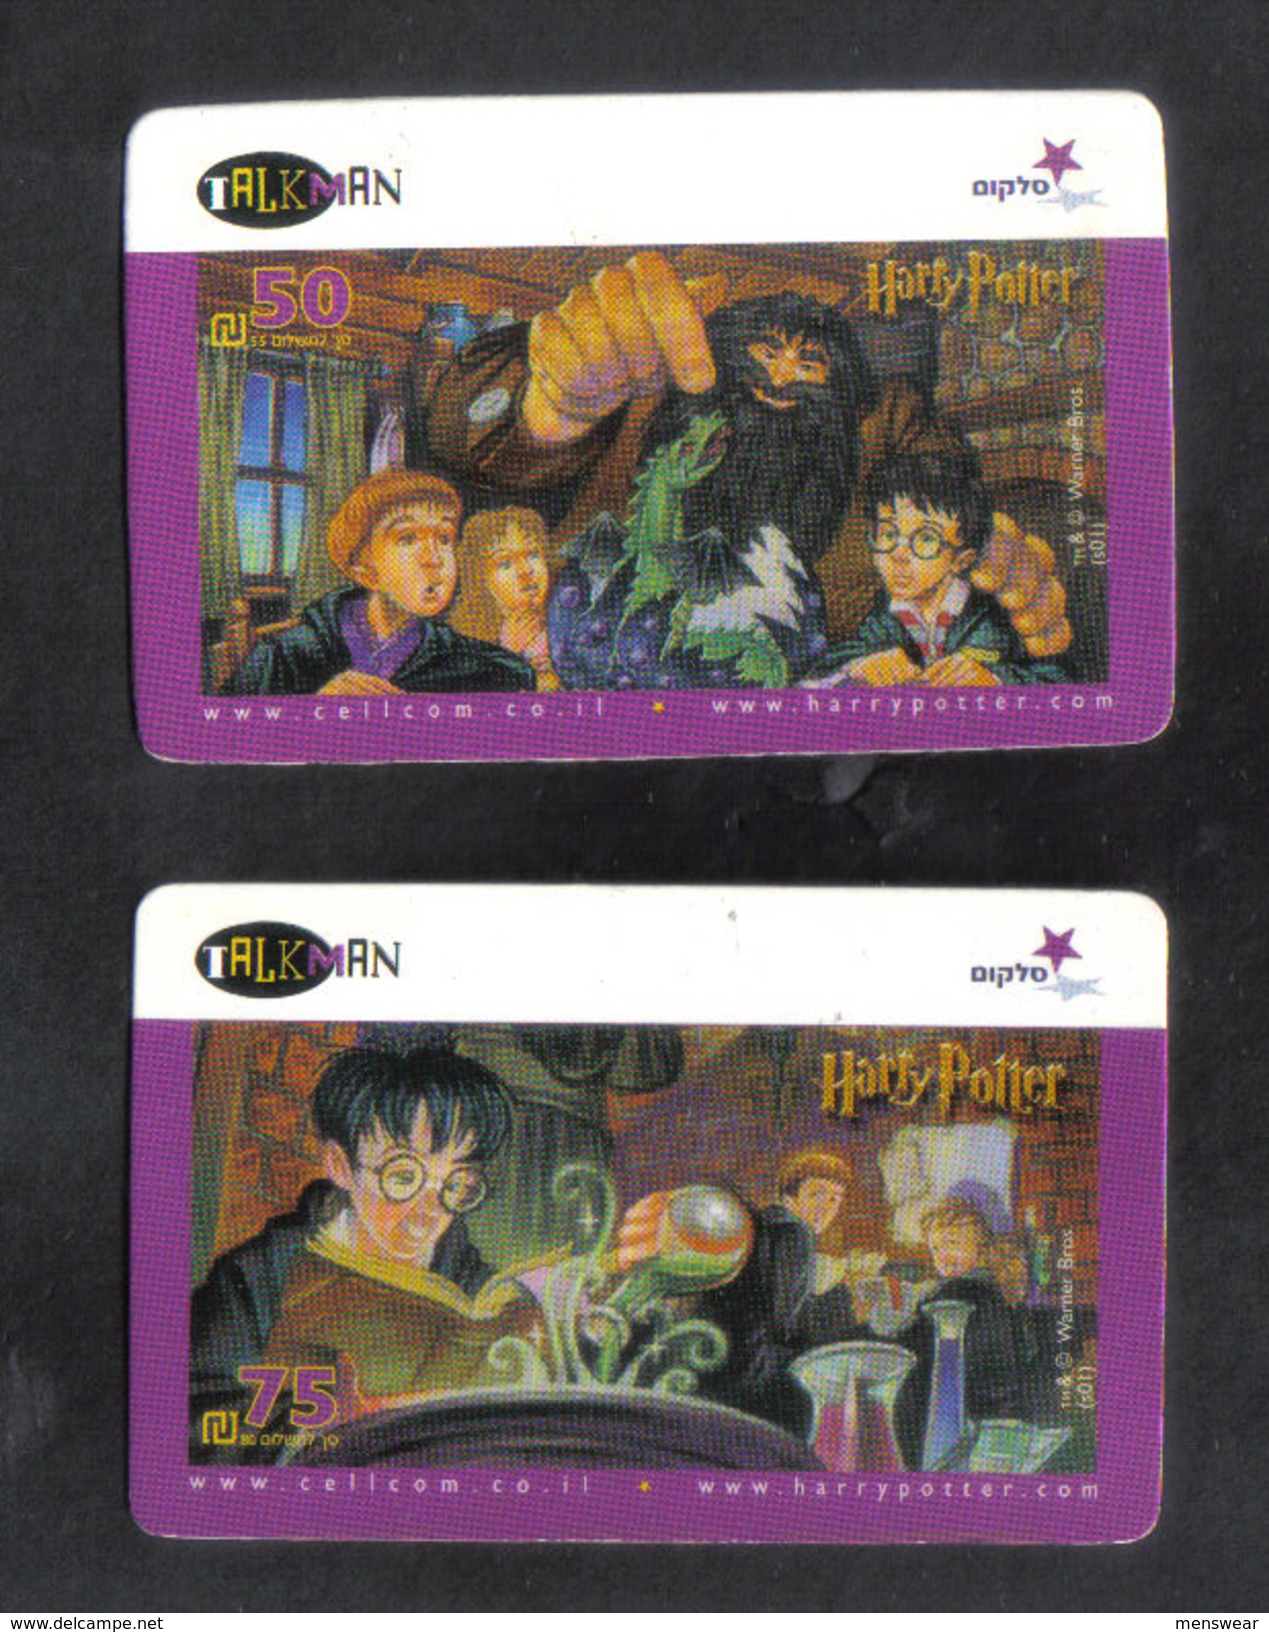 2 DISNEY CARDS - Disney